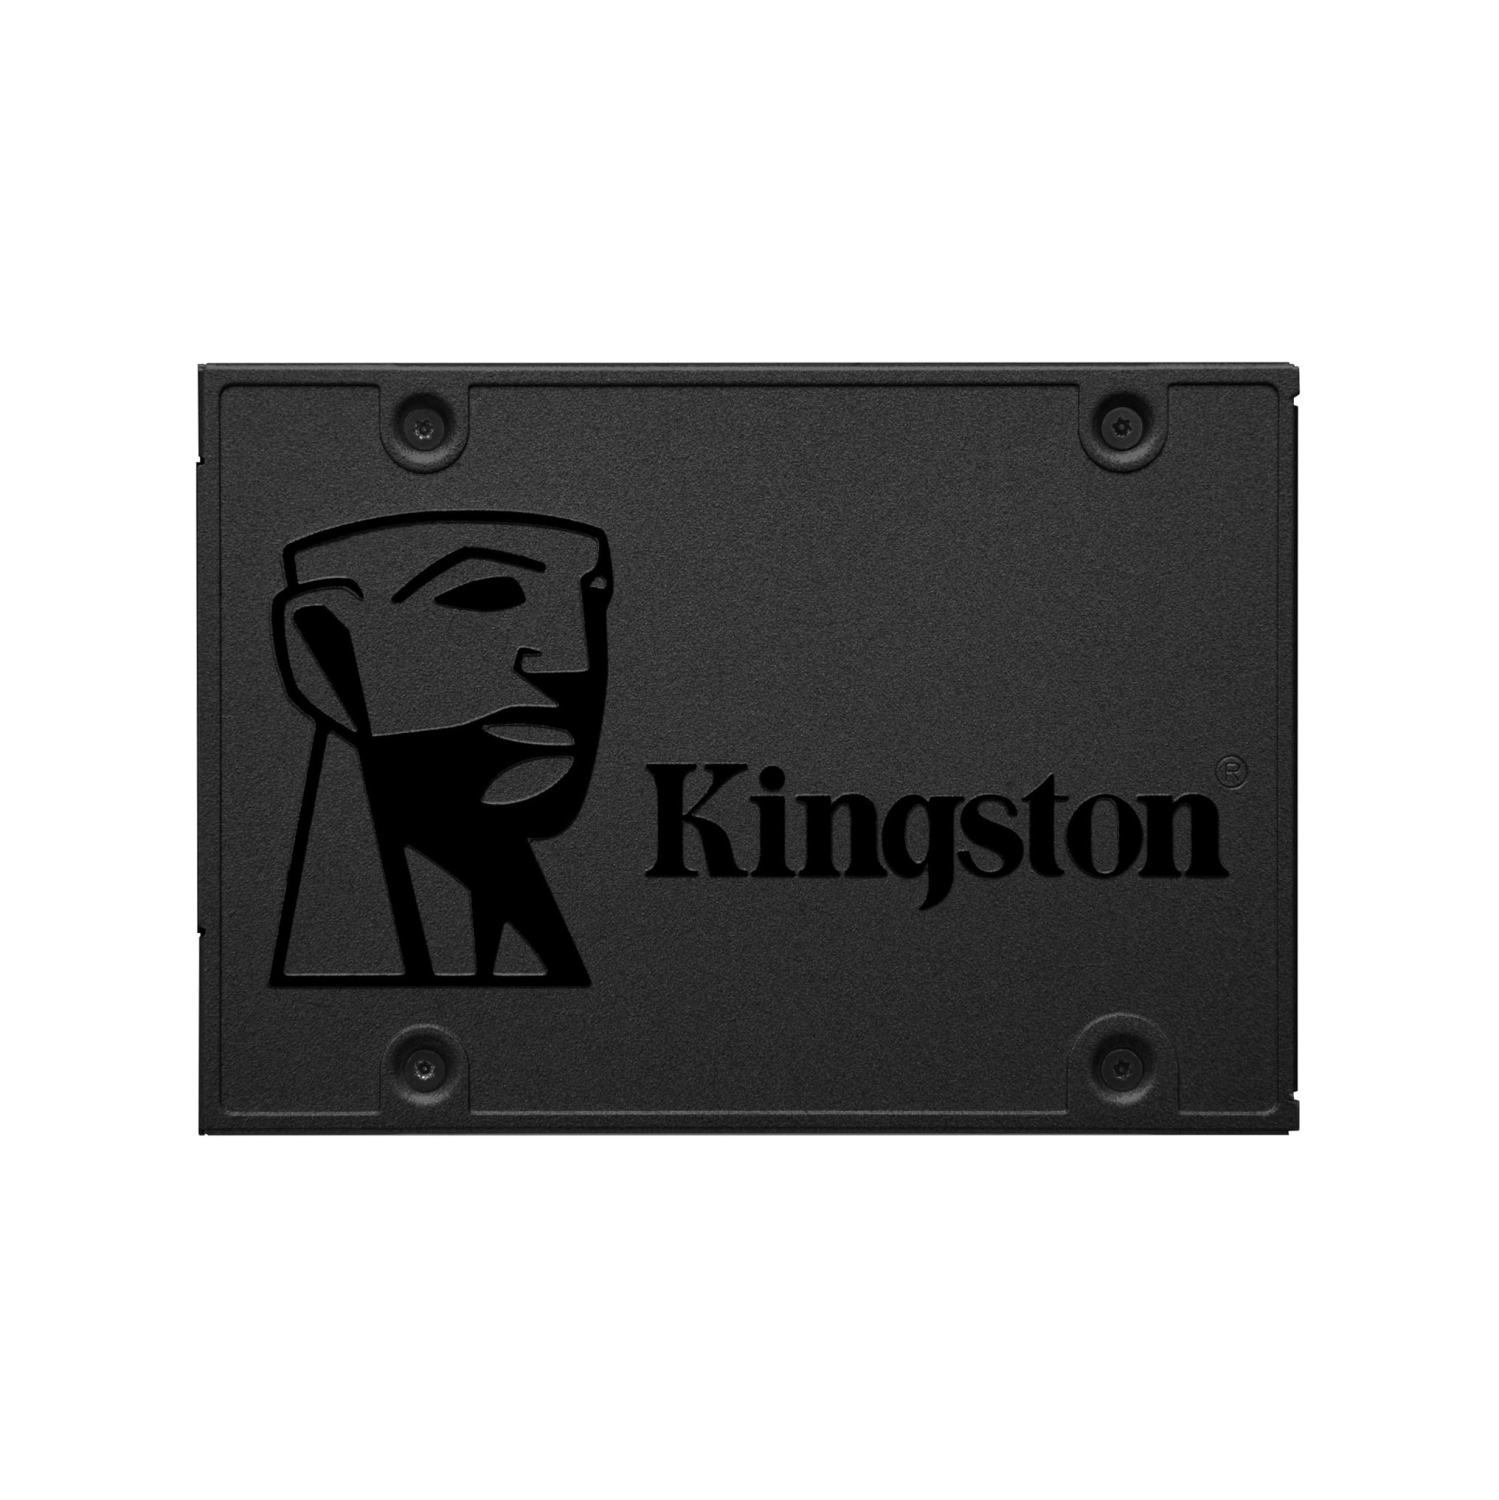 Refurbished (Good) Kingston 120GB A400 SATA 3 2.5" Internal SSD SA400S37/120G - HDD